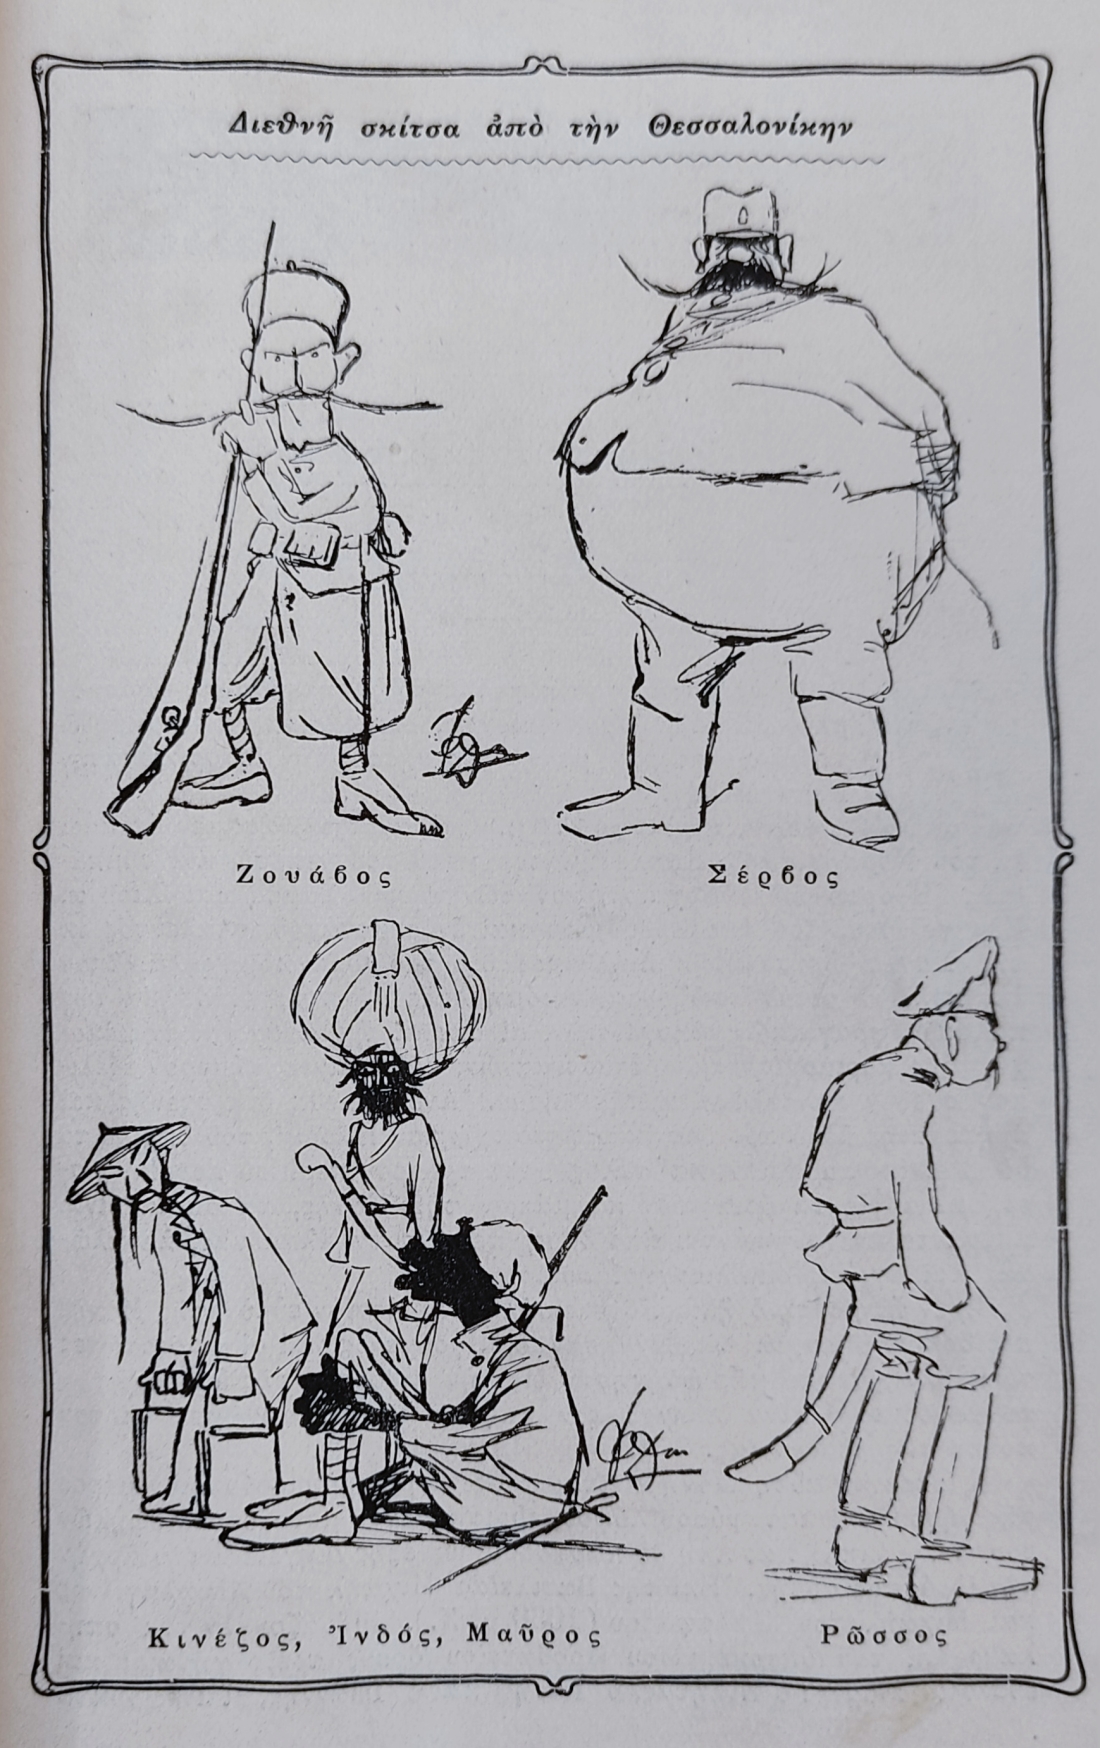 Σκίτσα του Φωκίωνος Δημητριάδη, που φιλοξενούνται στον τόμο του 1918, τον τελευταίο της σειράς. Στη συνέχεια, ο Δημητριάδης διέπρεψε στην πολιτική γελοιογραφία.